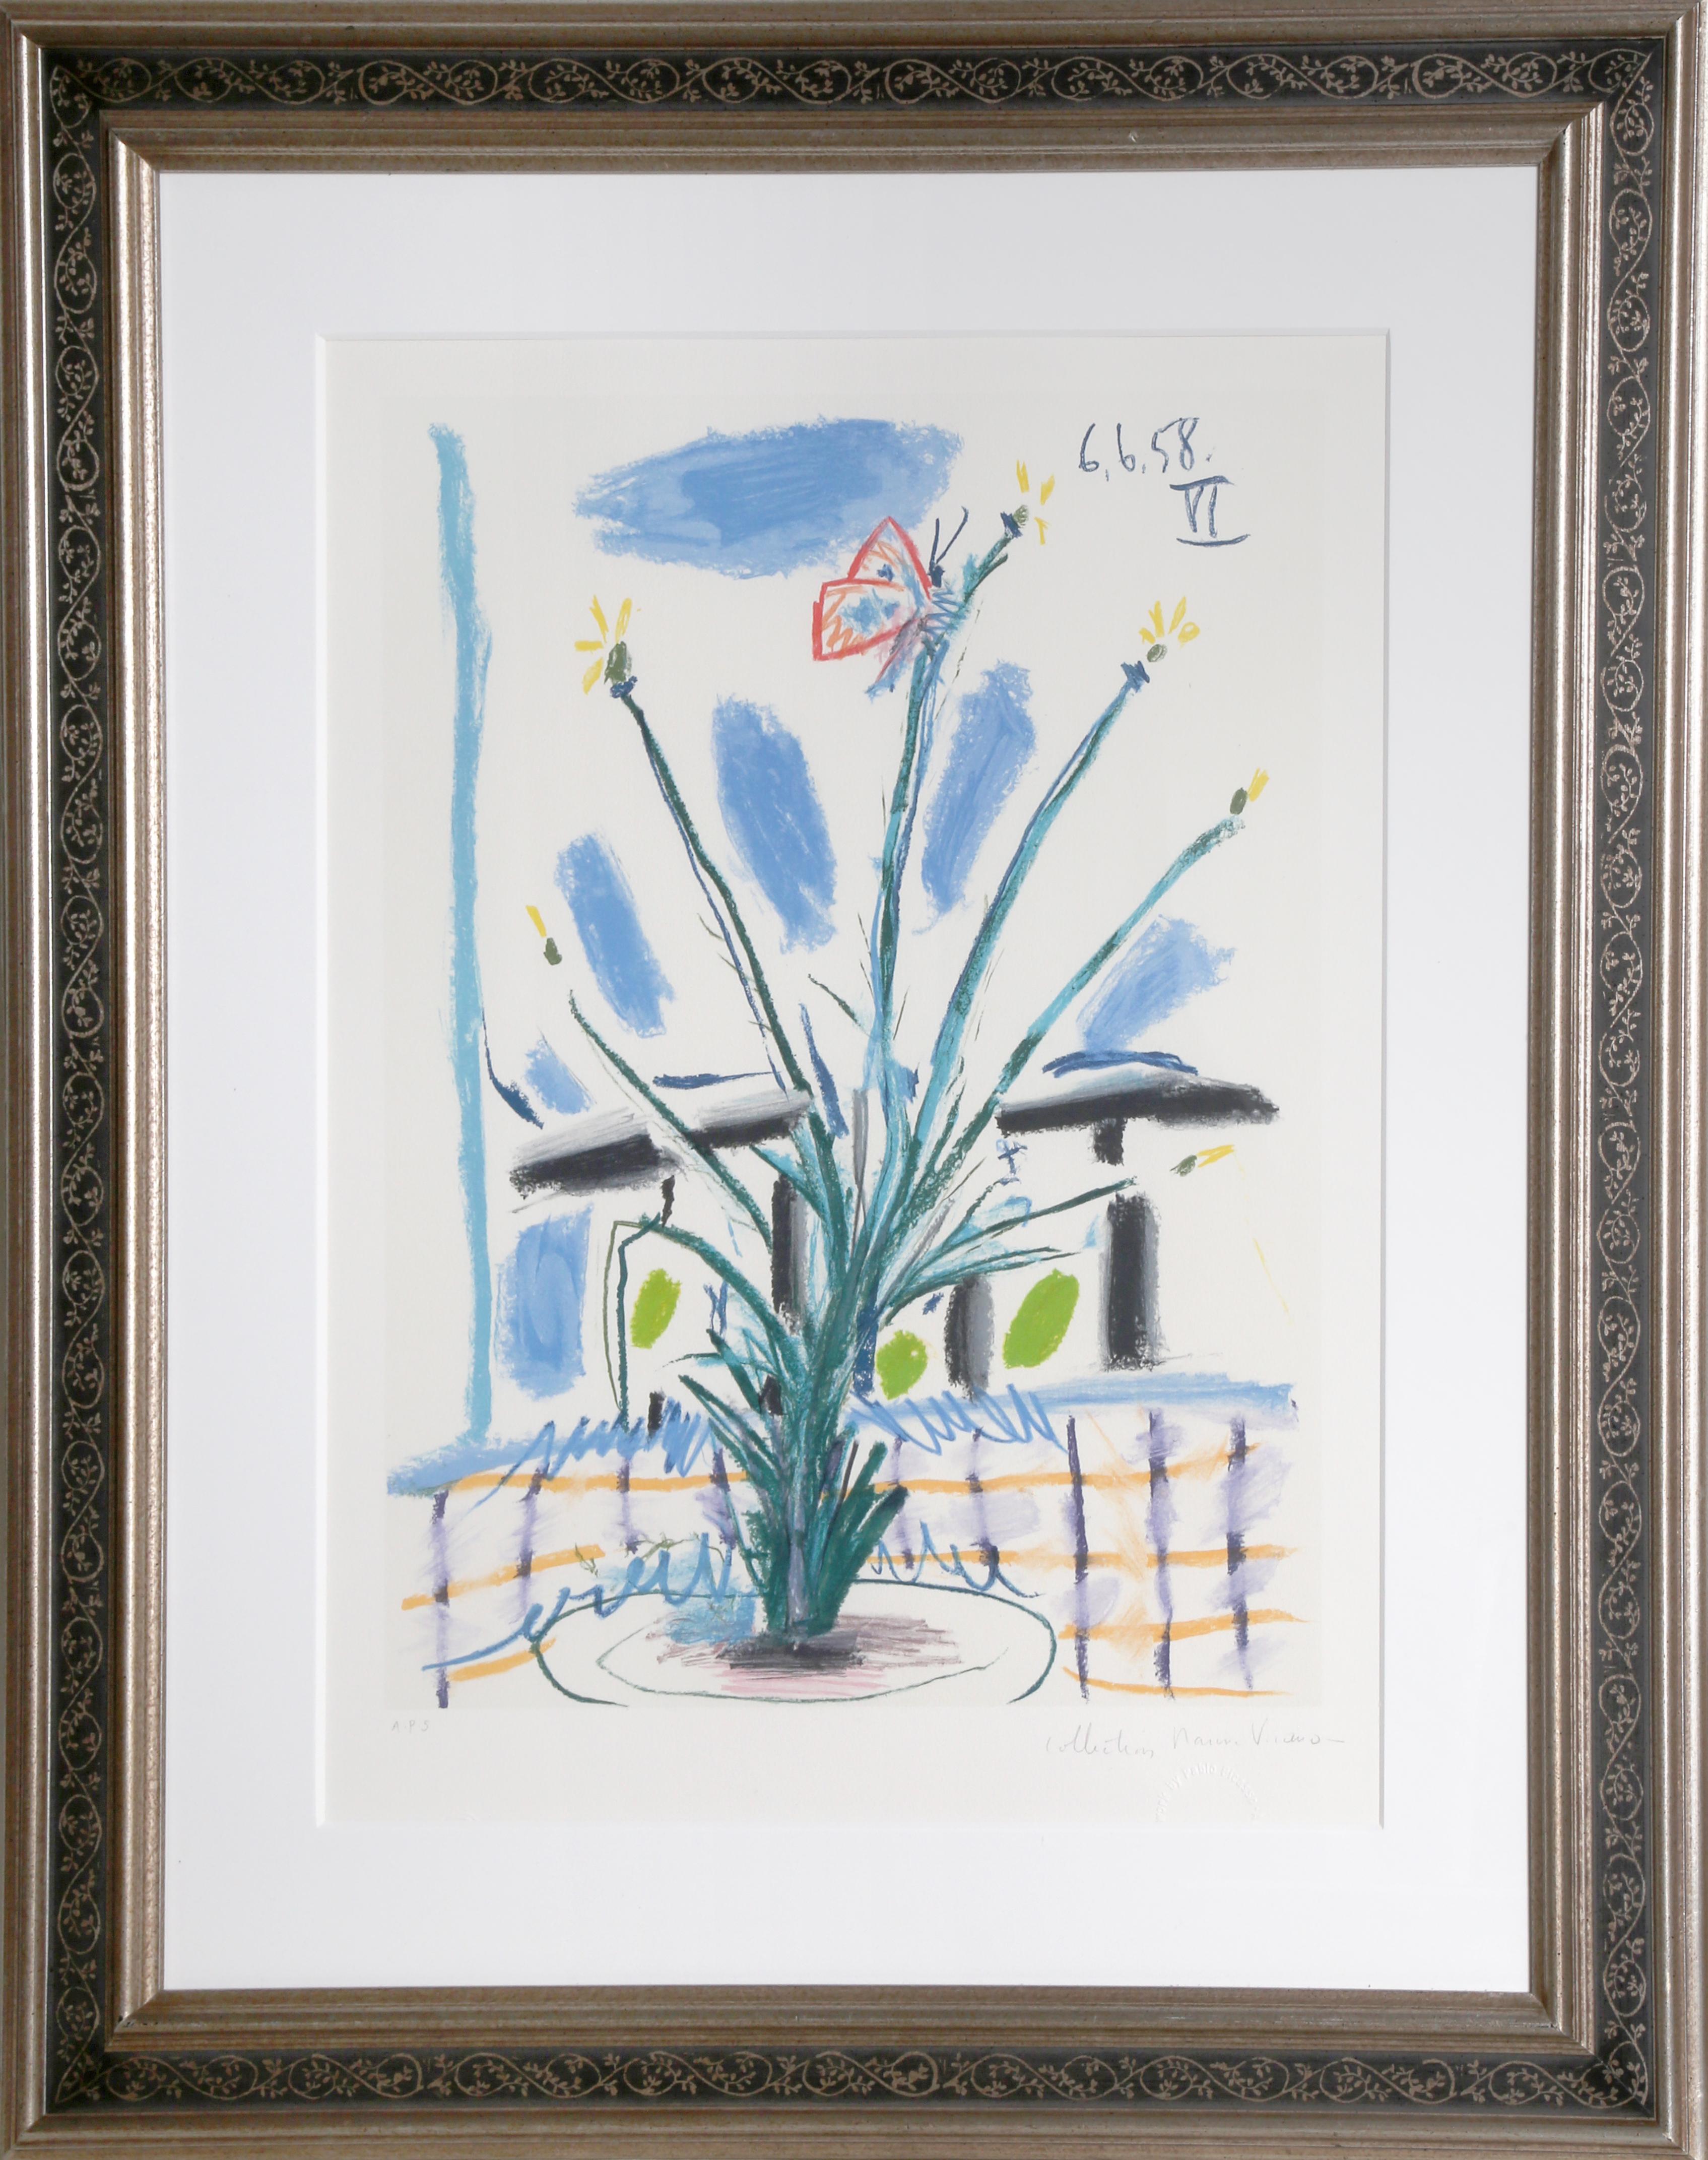 Une lithographie provenant de la Collection SALE de Marina Picasso d'après le tableau de Pablo Picasso "Le Bouquet".  La peinture originale a été achevée en 1958. Dans les années 1970, après la mort de Picasso, Marina Picasso, sa petite-fille, a